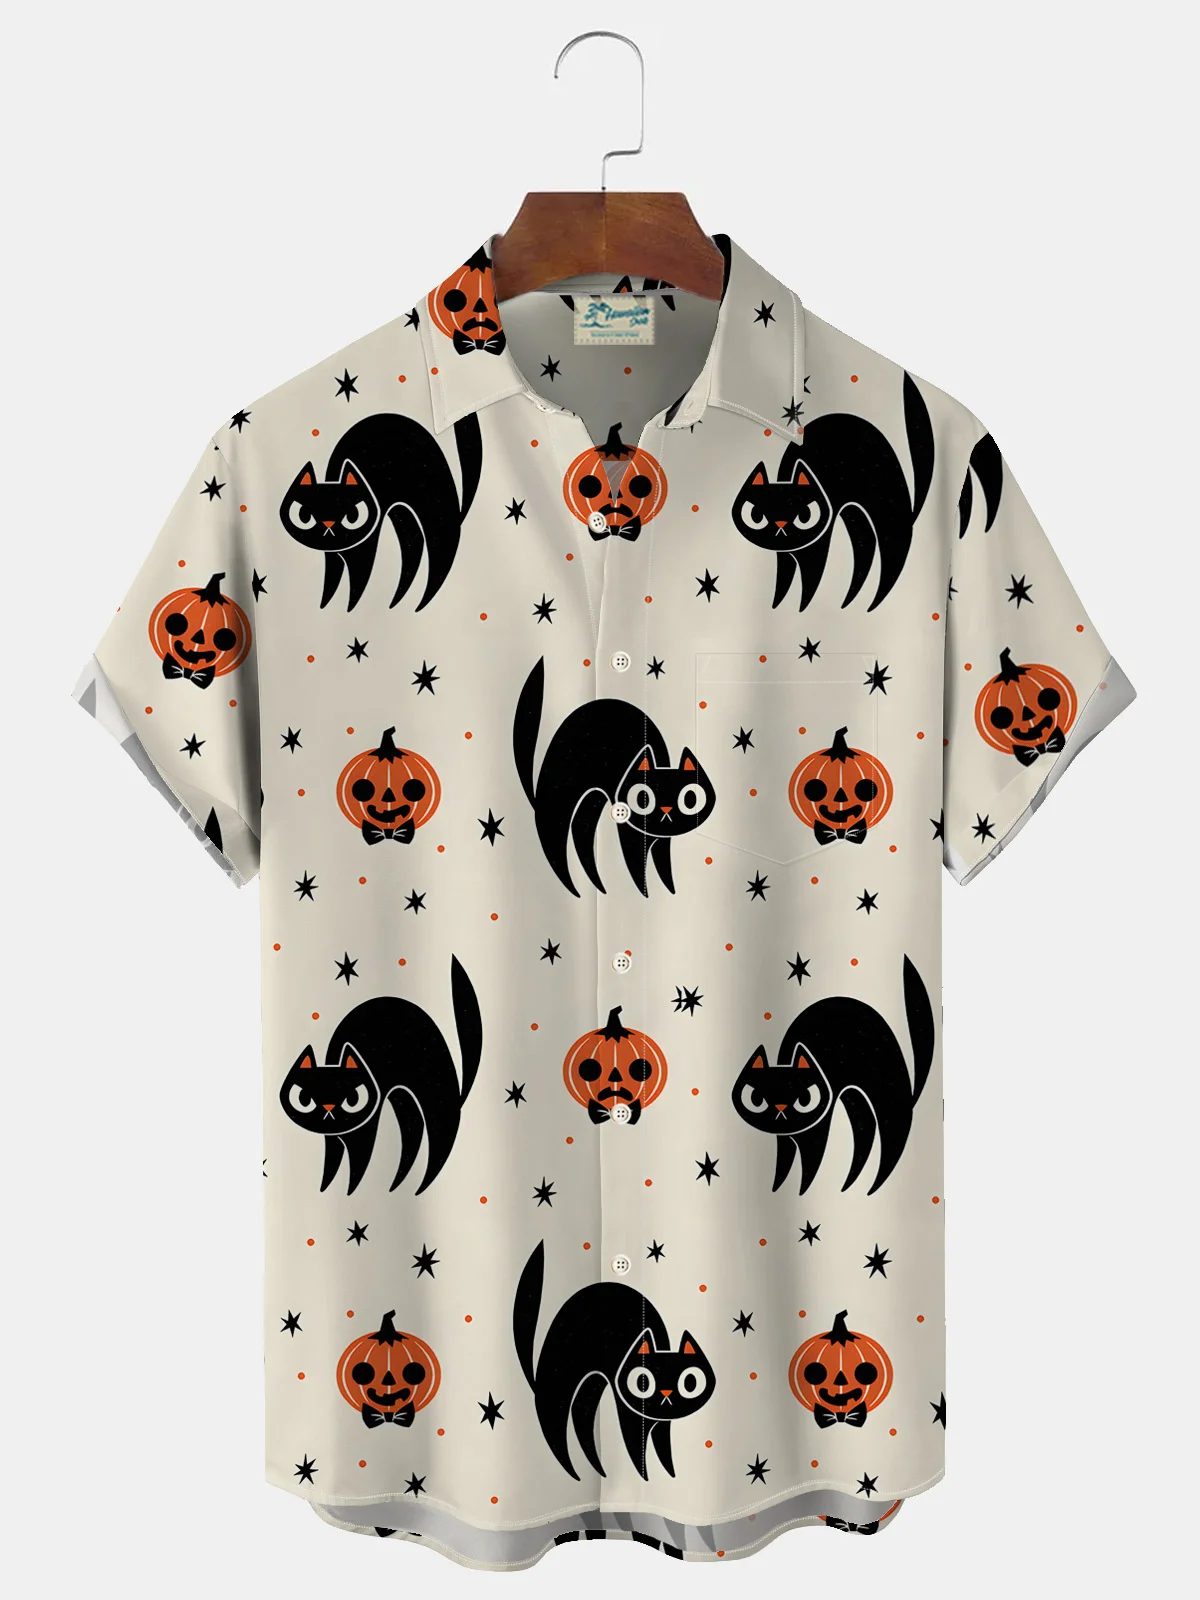 Royaura Halloween Pumpkin Ghost Print Men's Button Pocket Short Sleeve Shirt